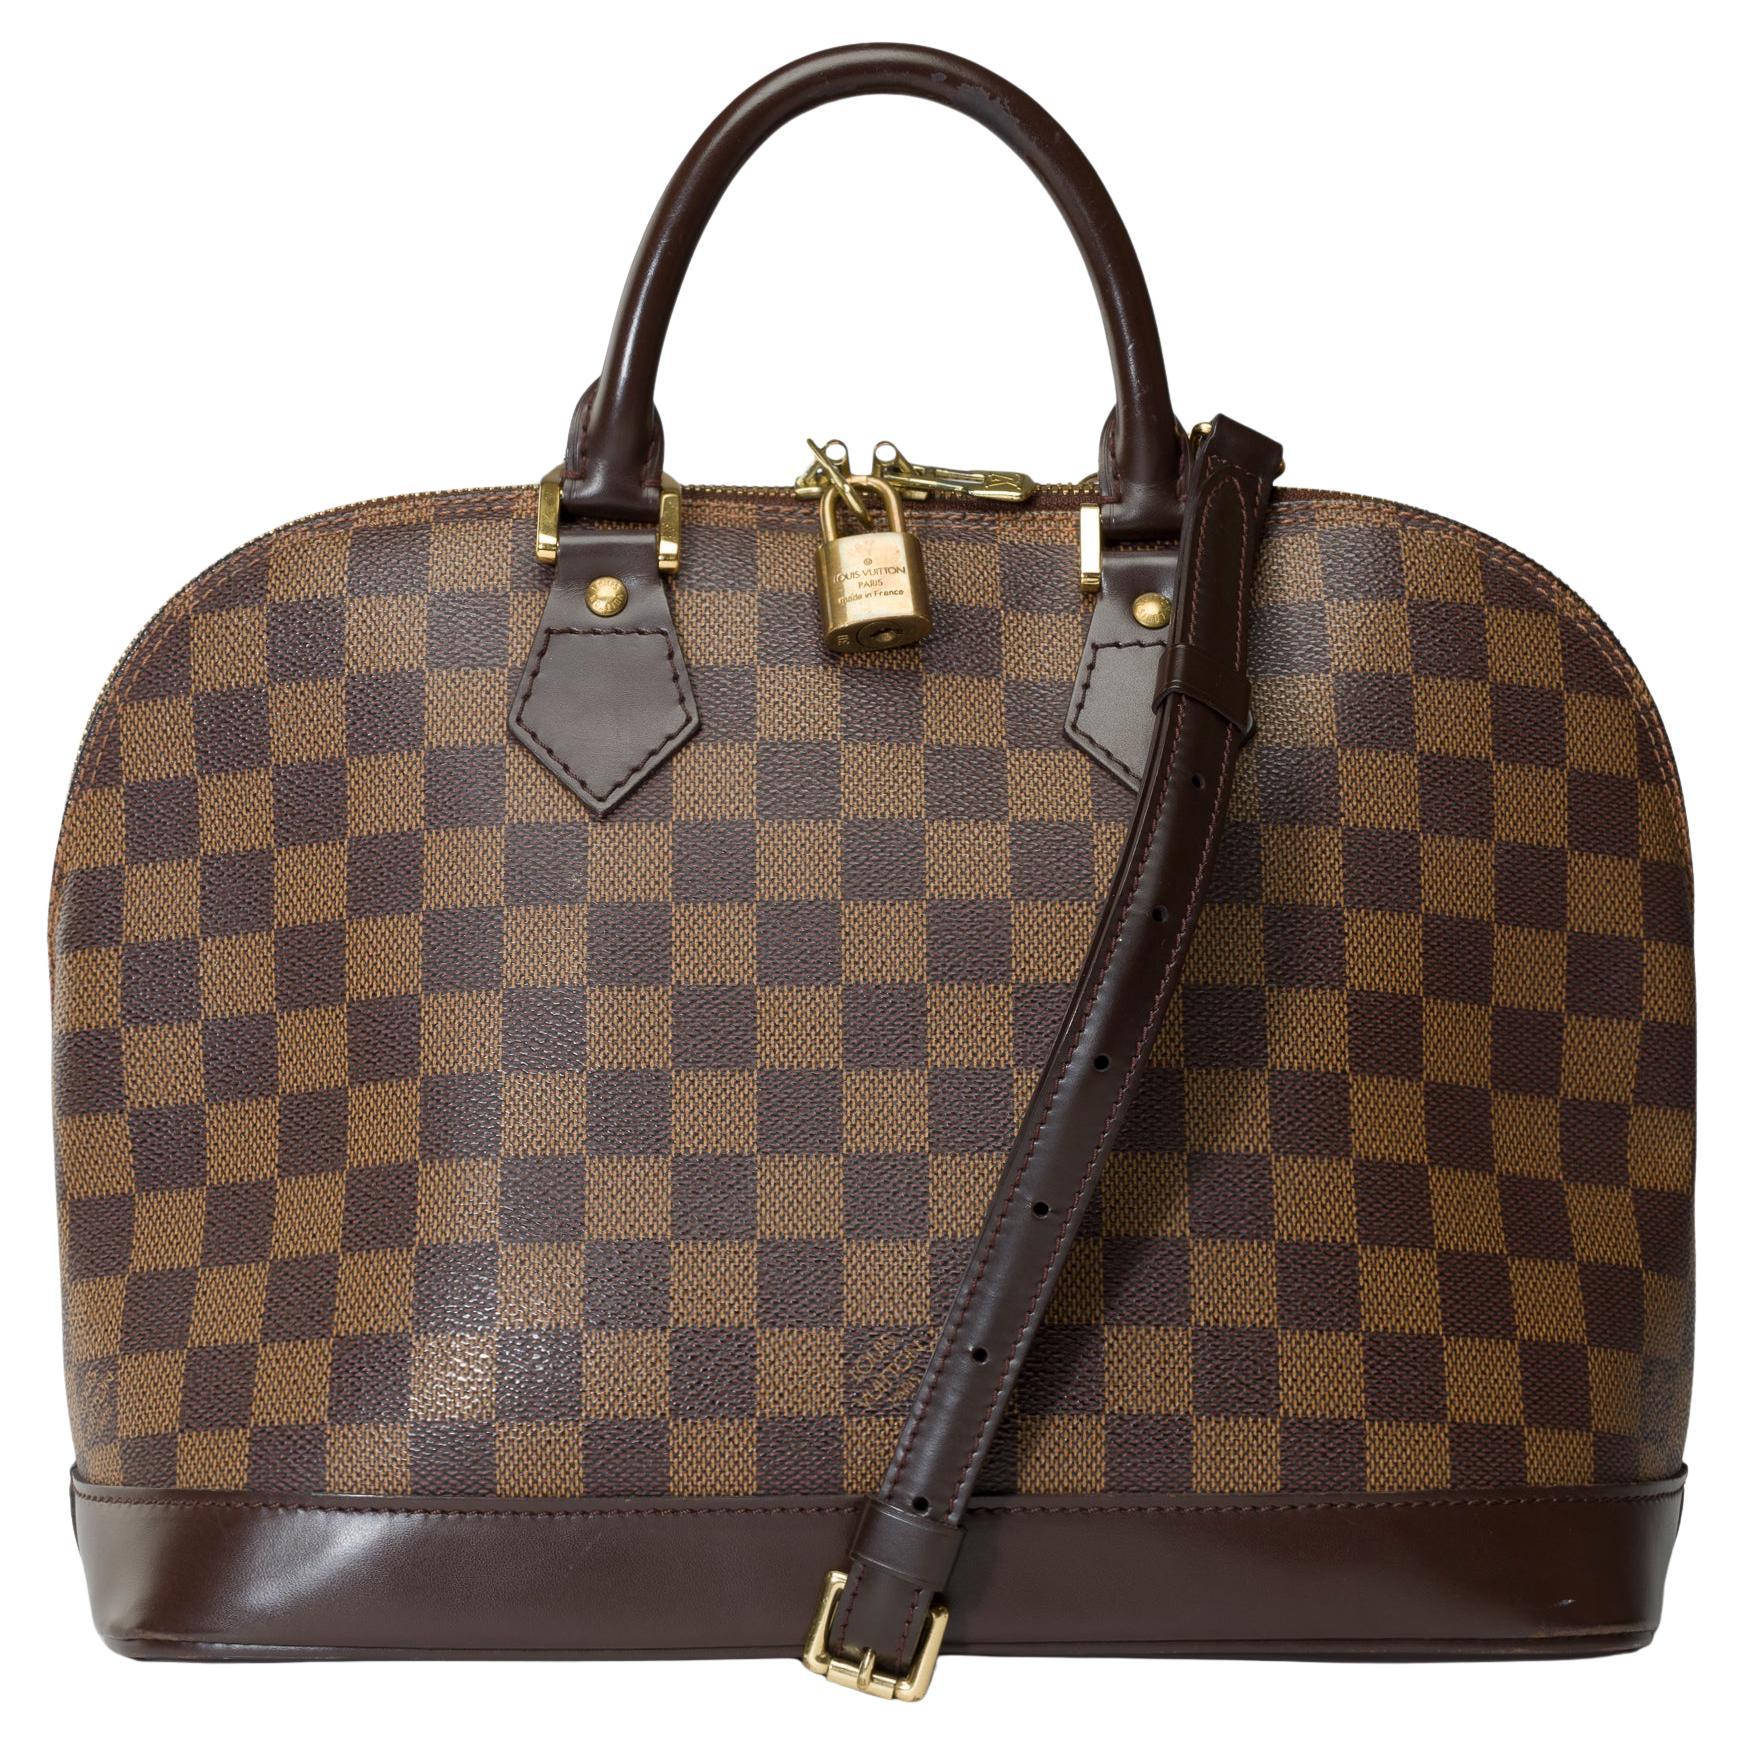 Ravissante bandoulière de sac à main Louis Vuitton Alma en toile damier marron, GHW en vente